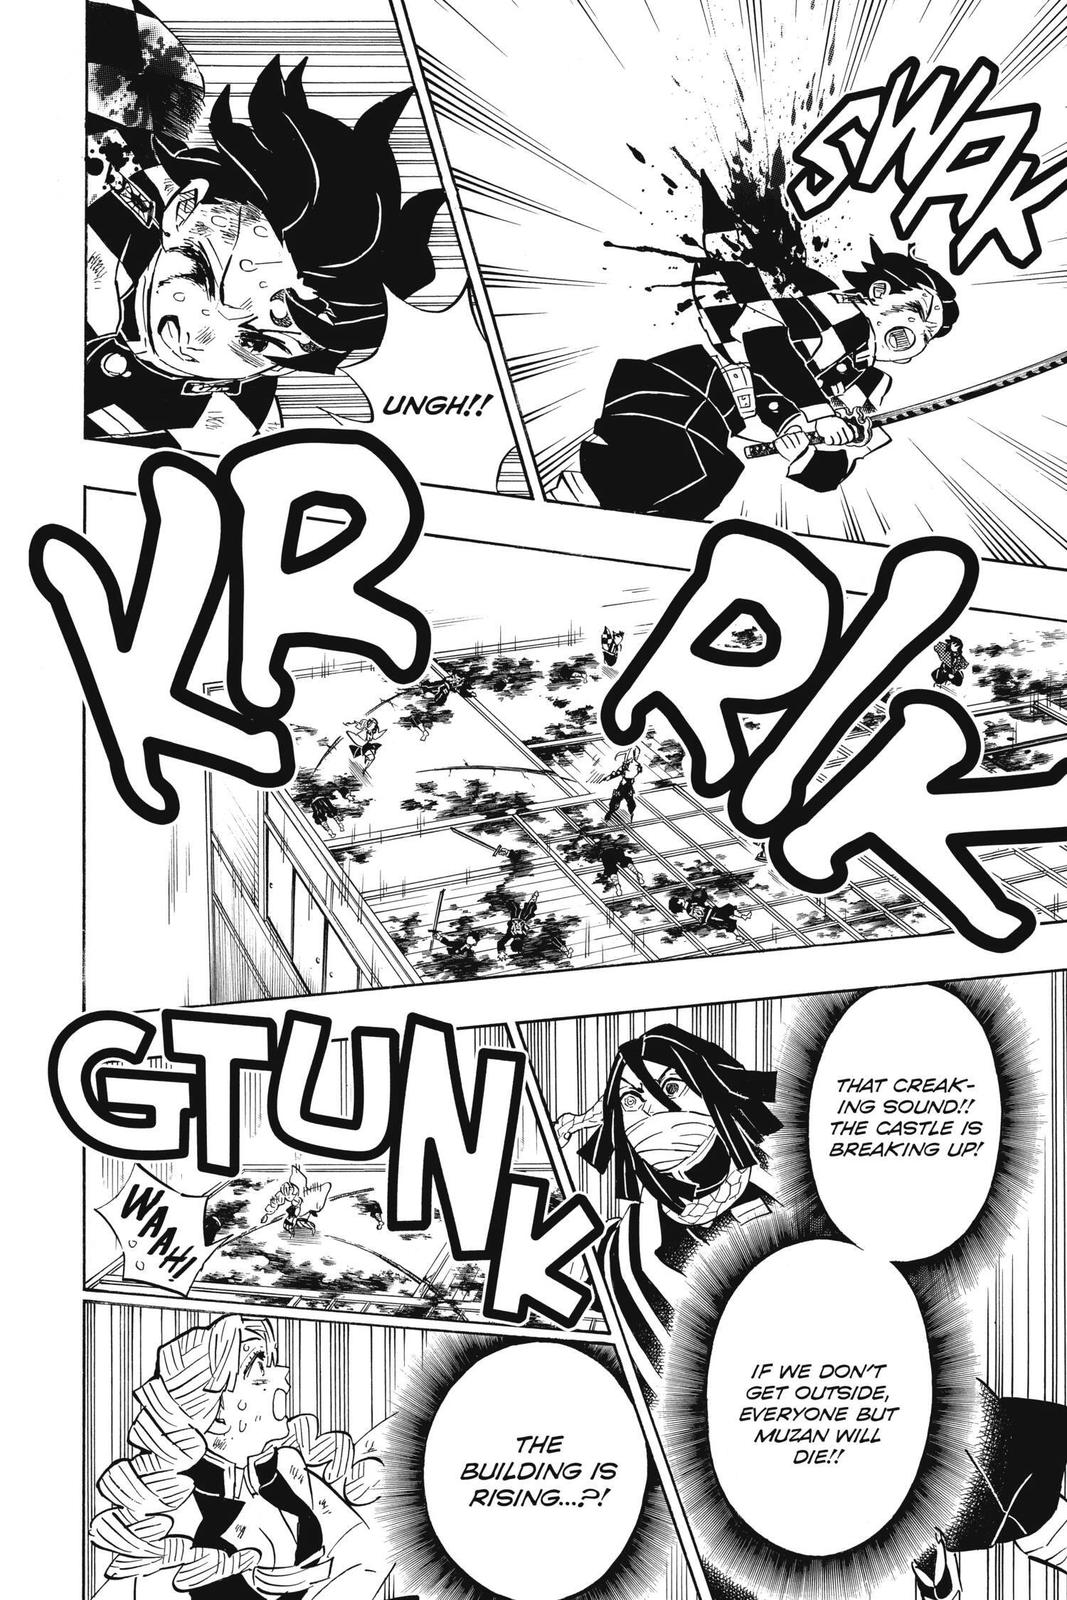 Demon Slayer Manga Manga Chapter - 183 - image 11